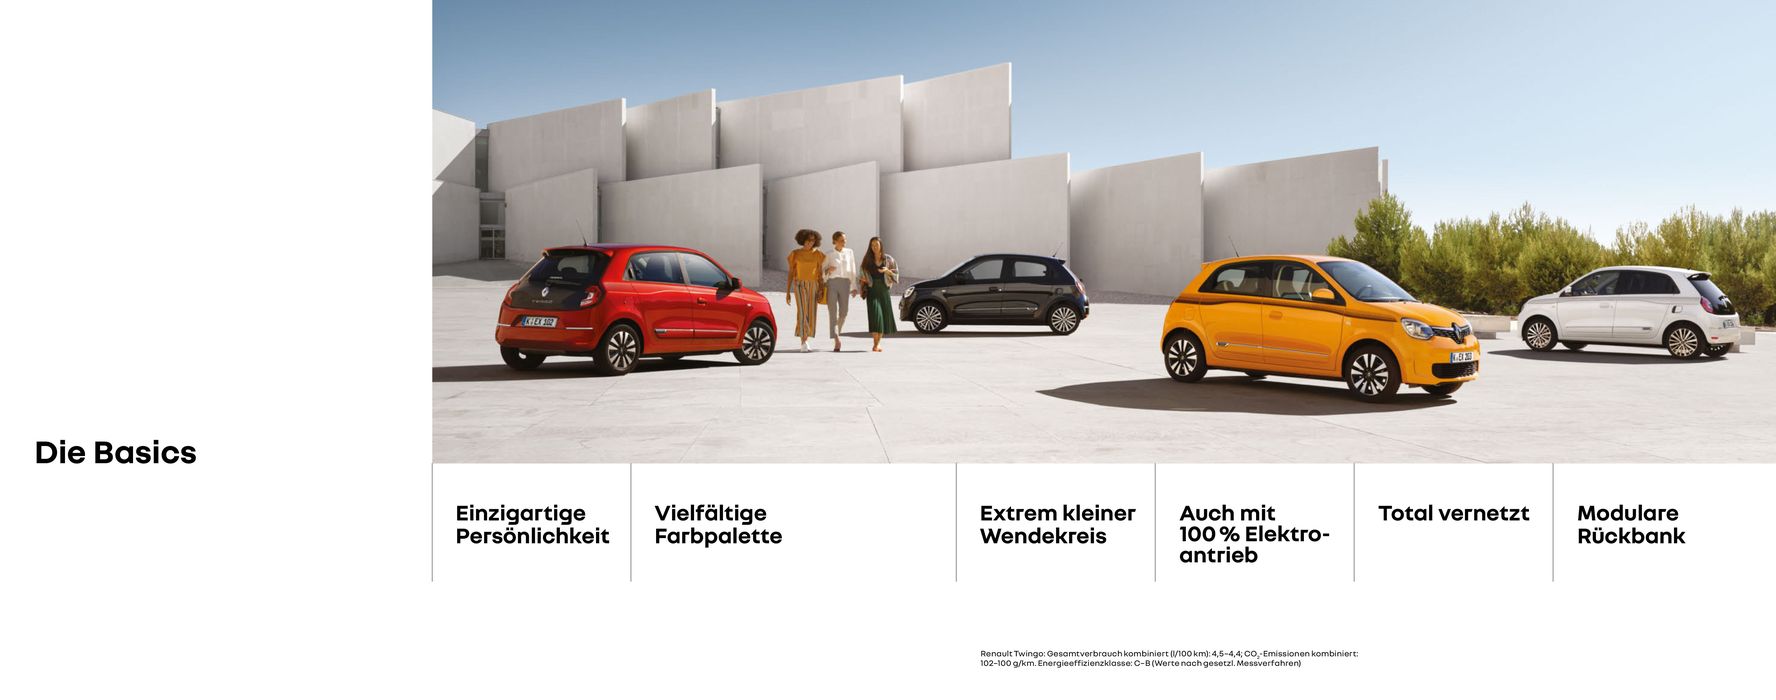 Renault Katalog | Twingo | 1.1.2022 - 31.12.2023